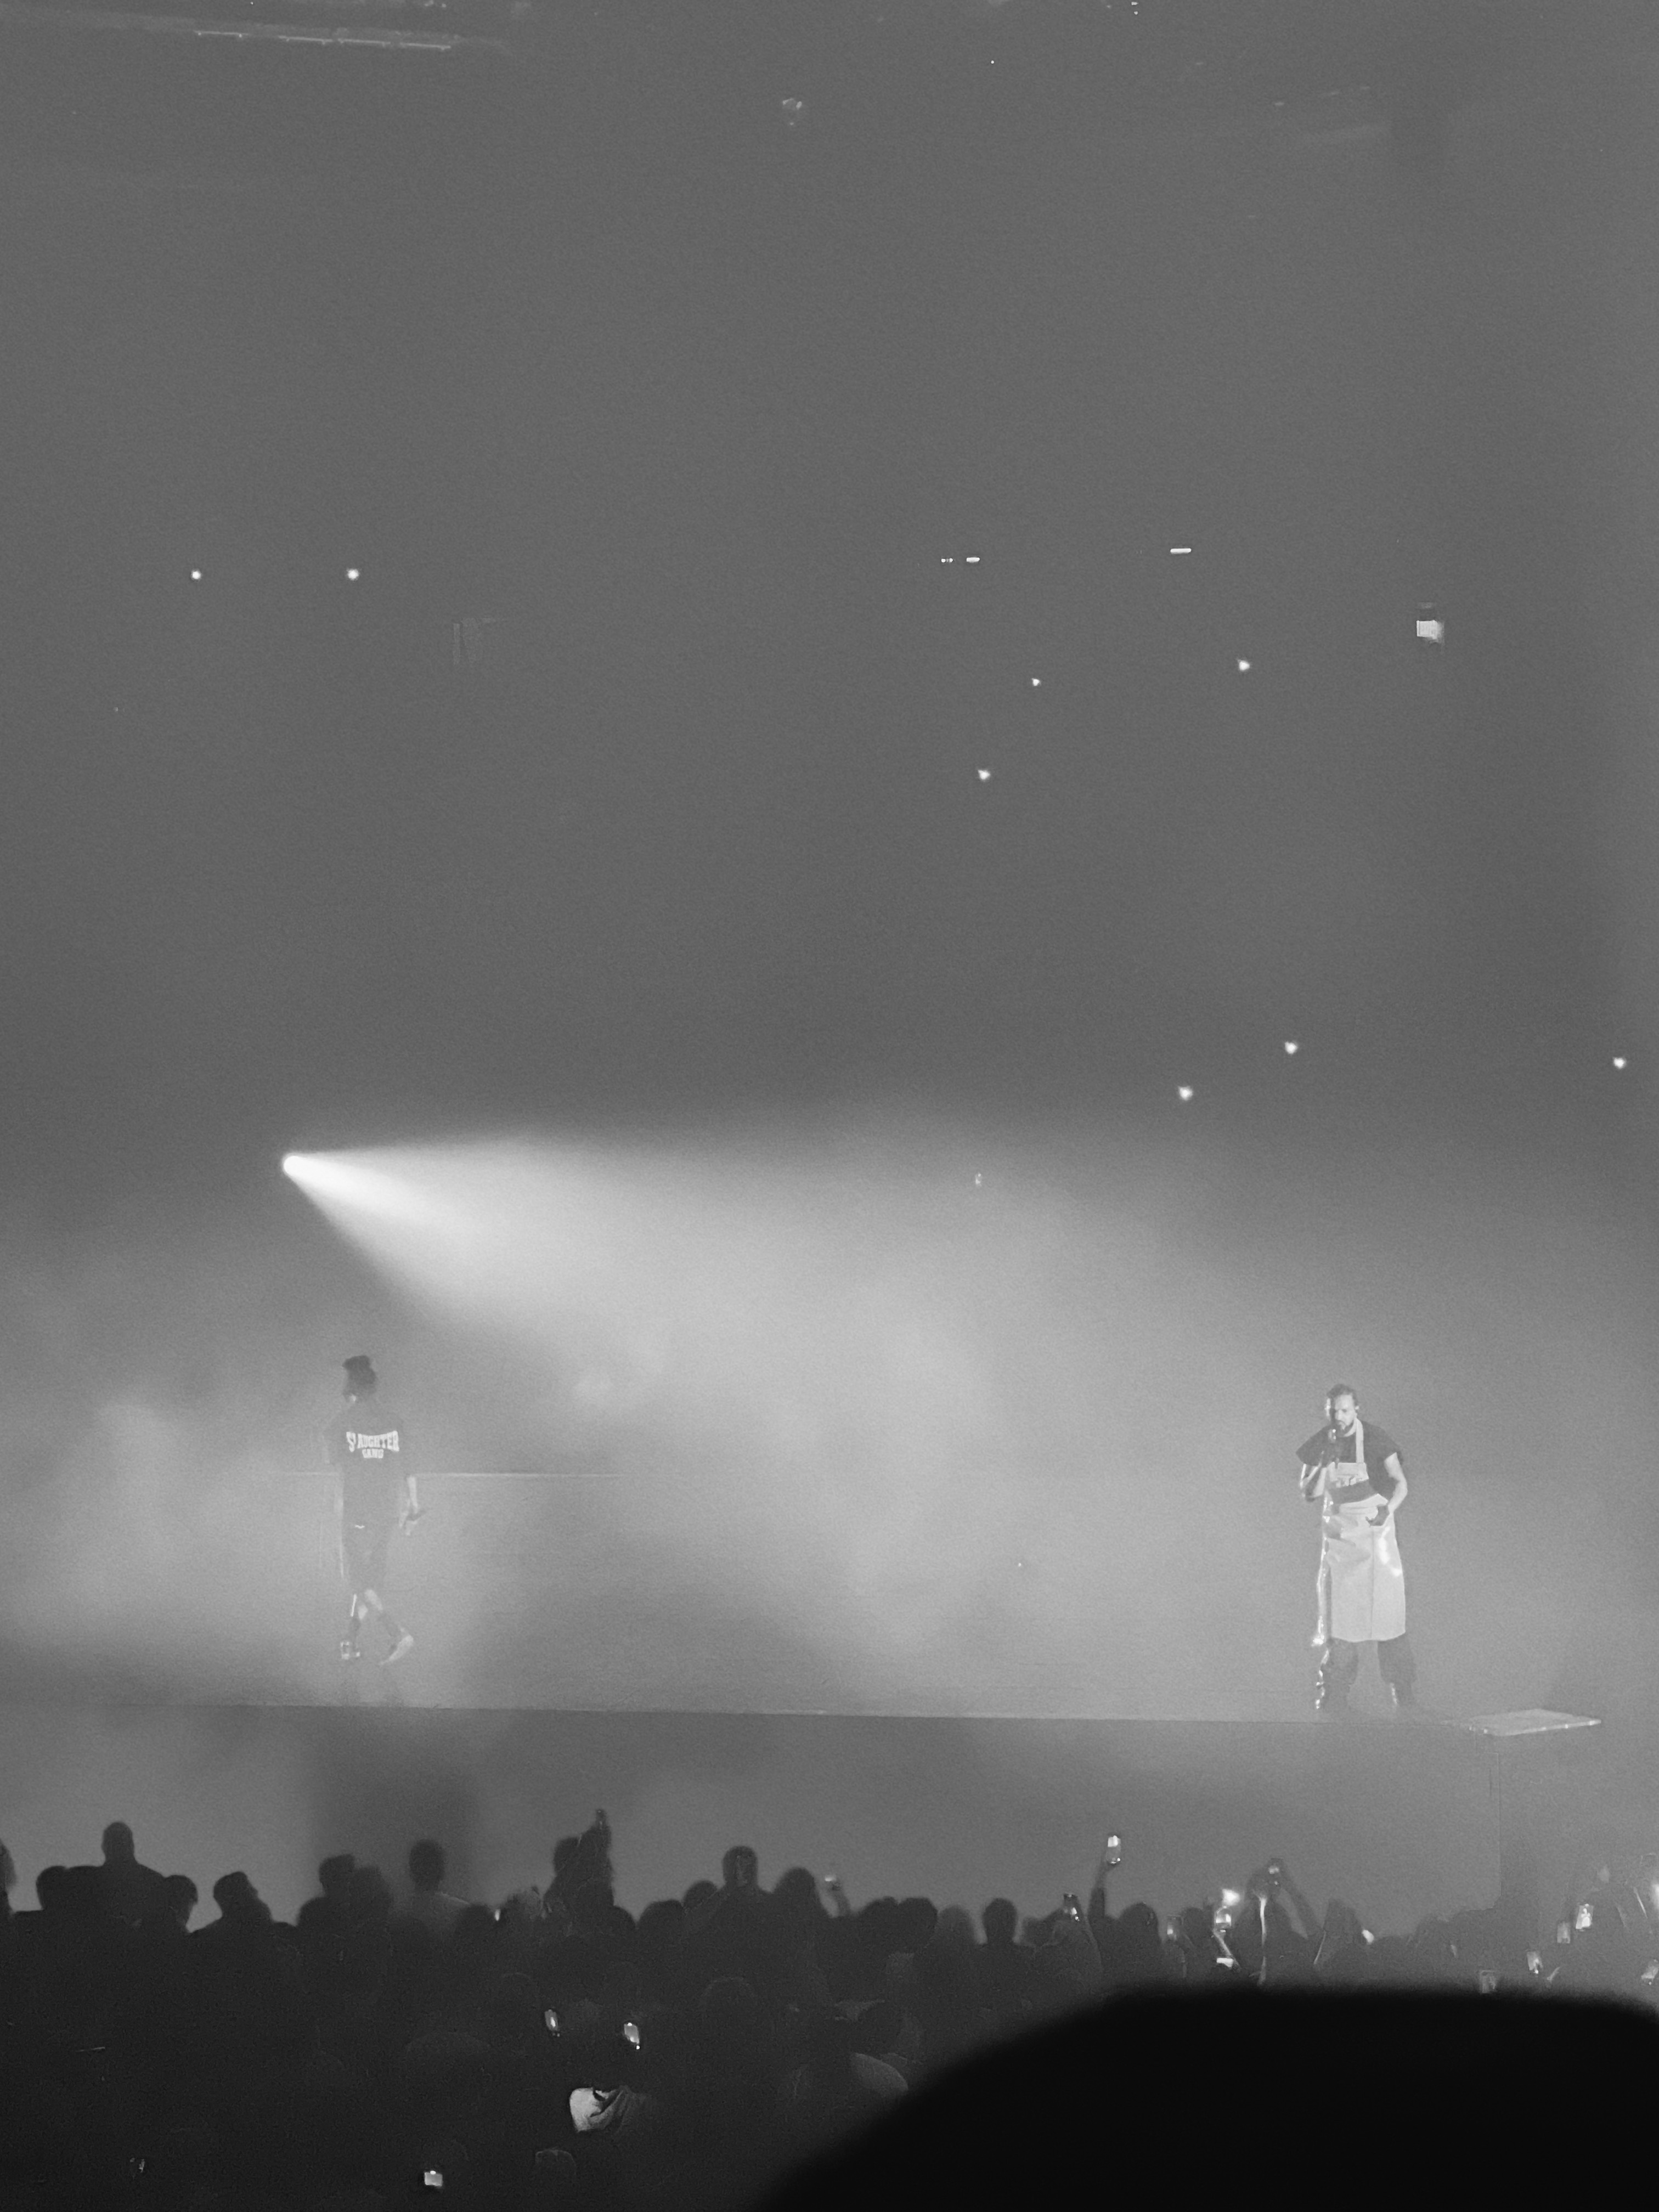 Drake & 21 Savage: It's All A Blur Tour – Novice Principles